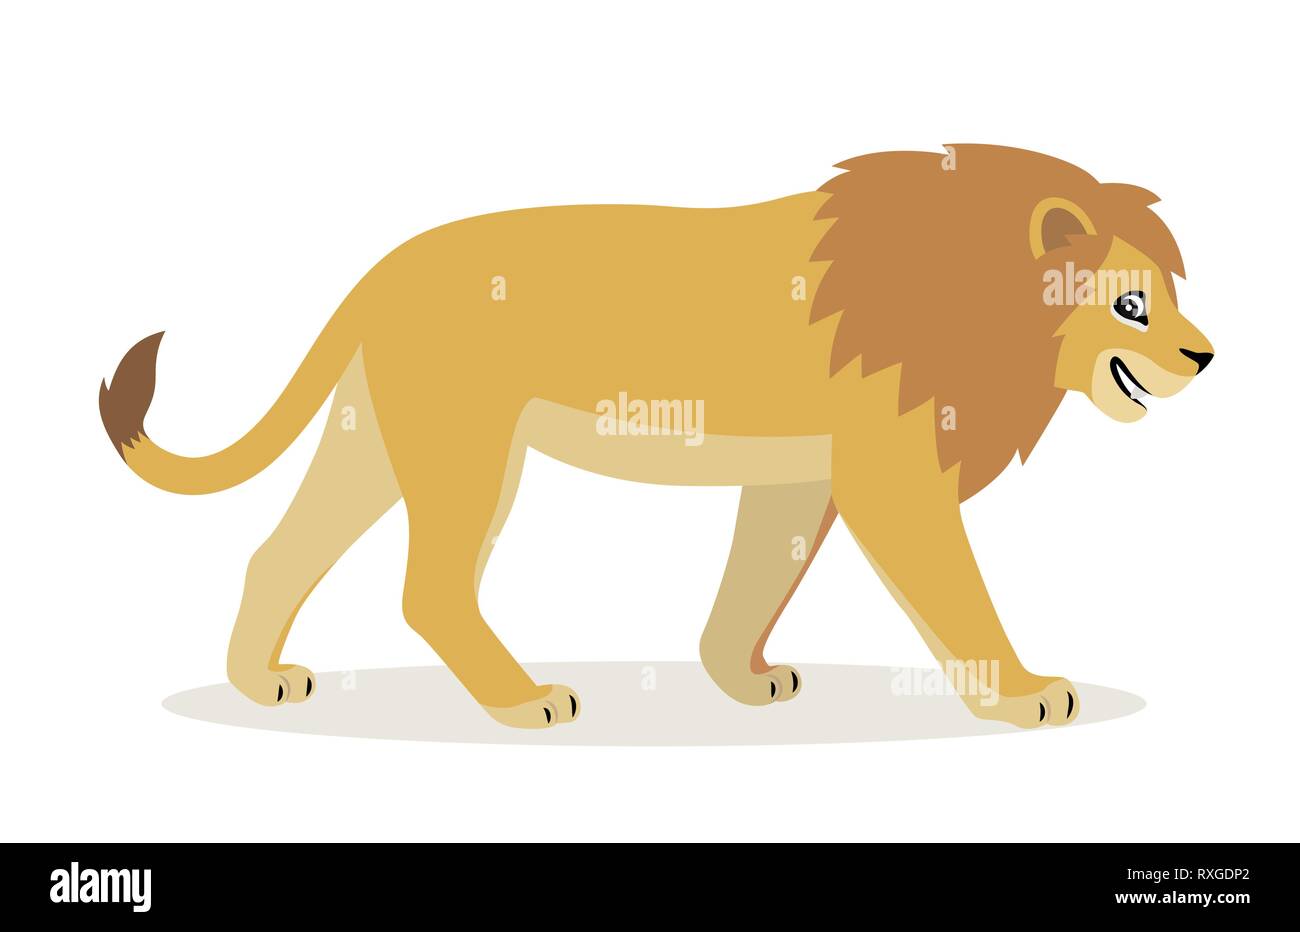 Afrikanische Tier, nett lustig Lion Symbol auf weißem Hintergrund, großes Wild Cat mit flauschigen Mähne, Vektor Stock Vektor